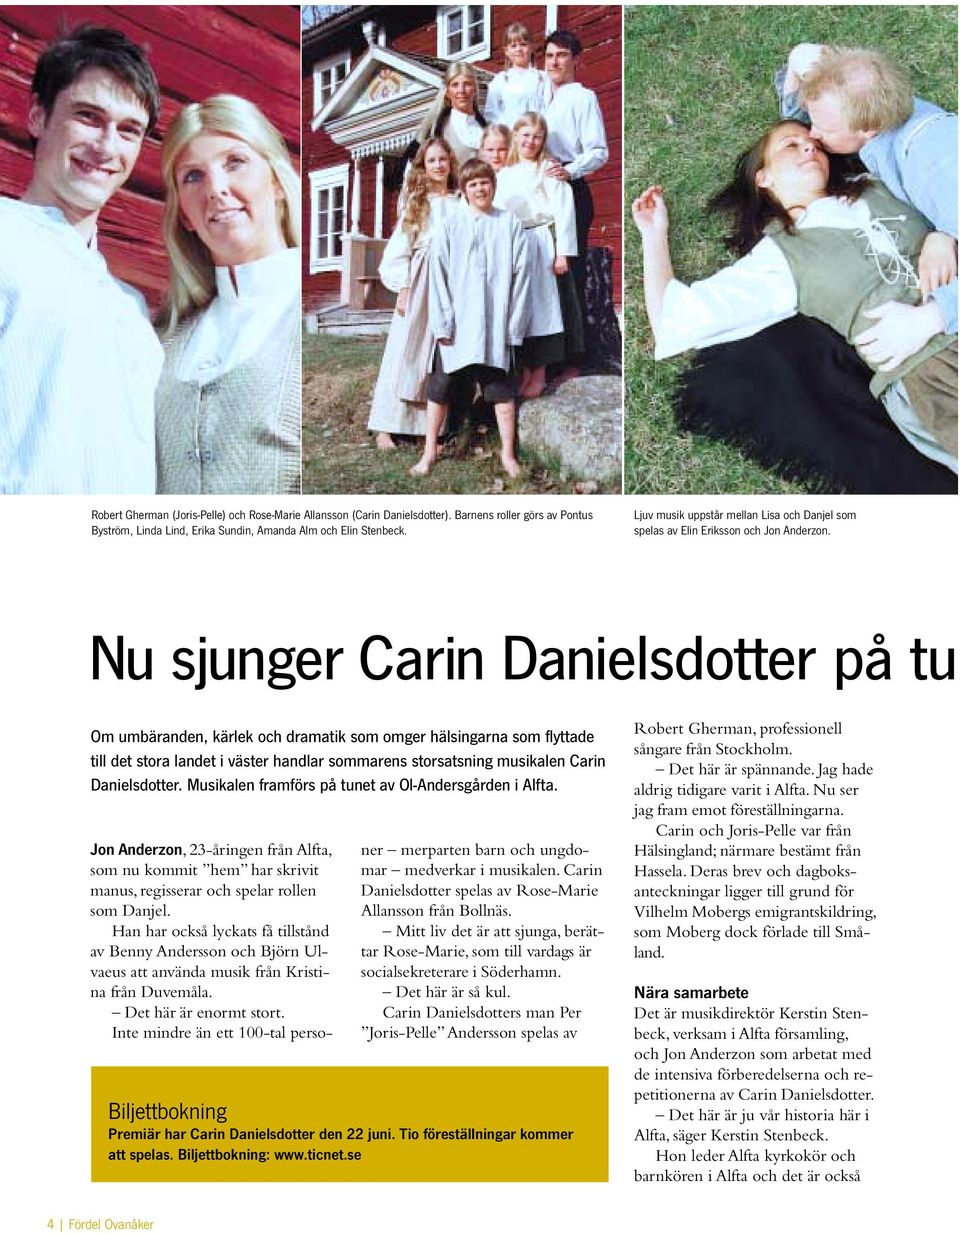 Nu sjunger Carin Danielsdotter på tu Om umbäranden, kärlek och dramatik som omger hälsingarna som flyttade till det stora landet i väster handlar sommarens storsatsning musikalen Carin Danielsdotter.